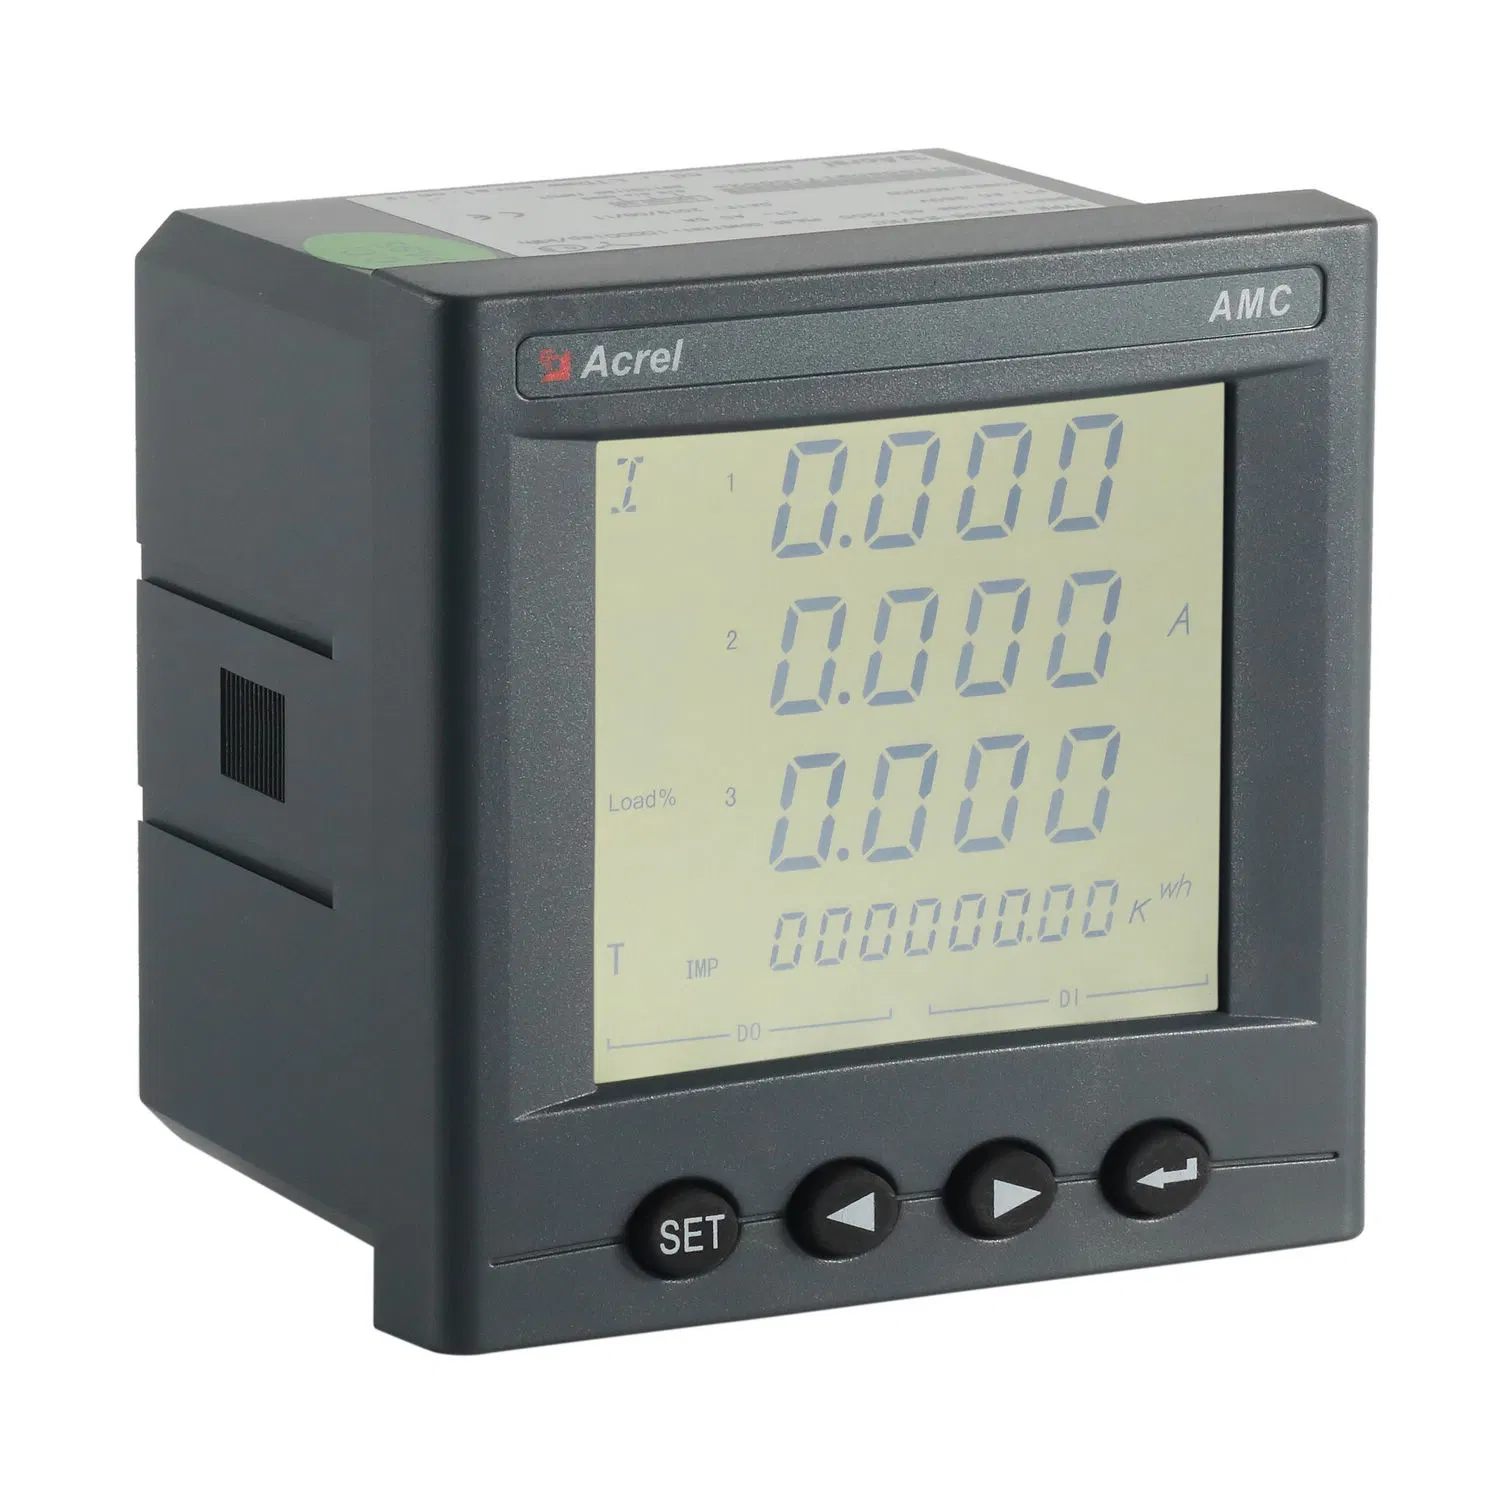 Acrel جهاز قياس لوحة كهربائية لتوزيع الجهد المنخفض Amc96L-E4/Kc مع 4di2do، RS485-Modbus